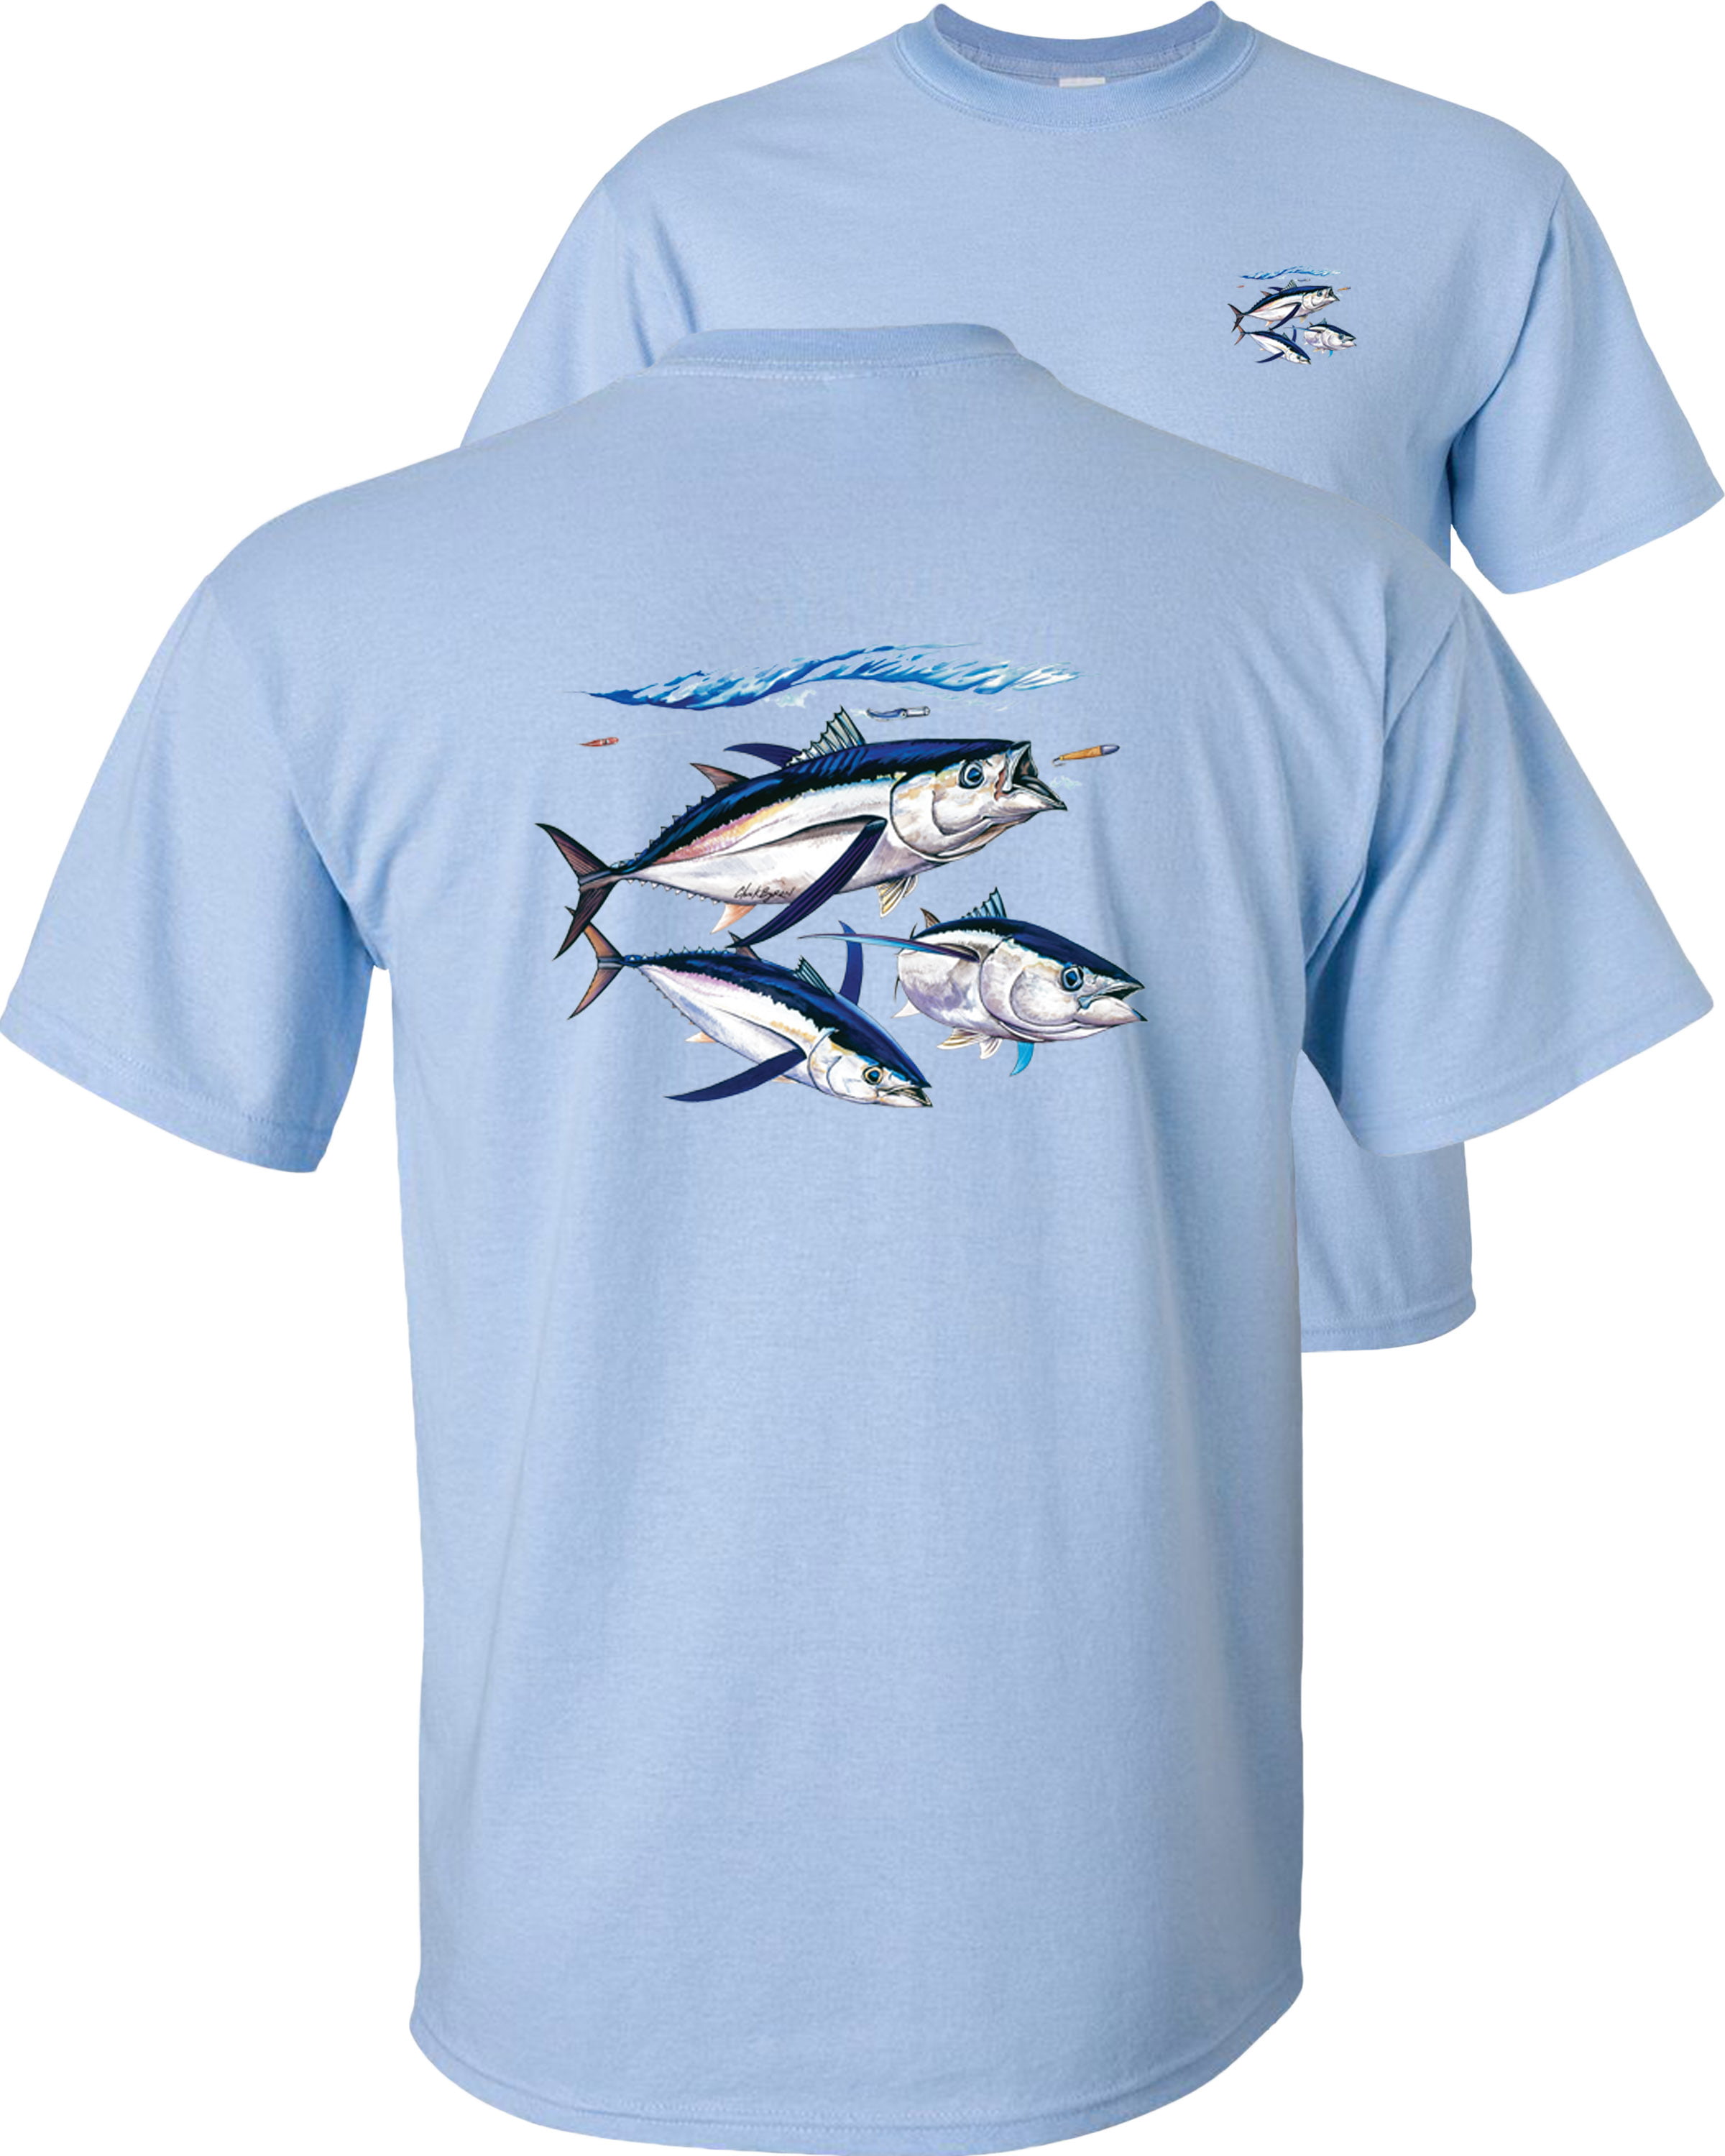 SEA FISHING tuna t-shirts ALL SIZES S-XXL 